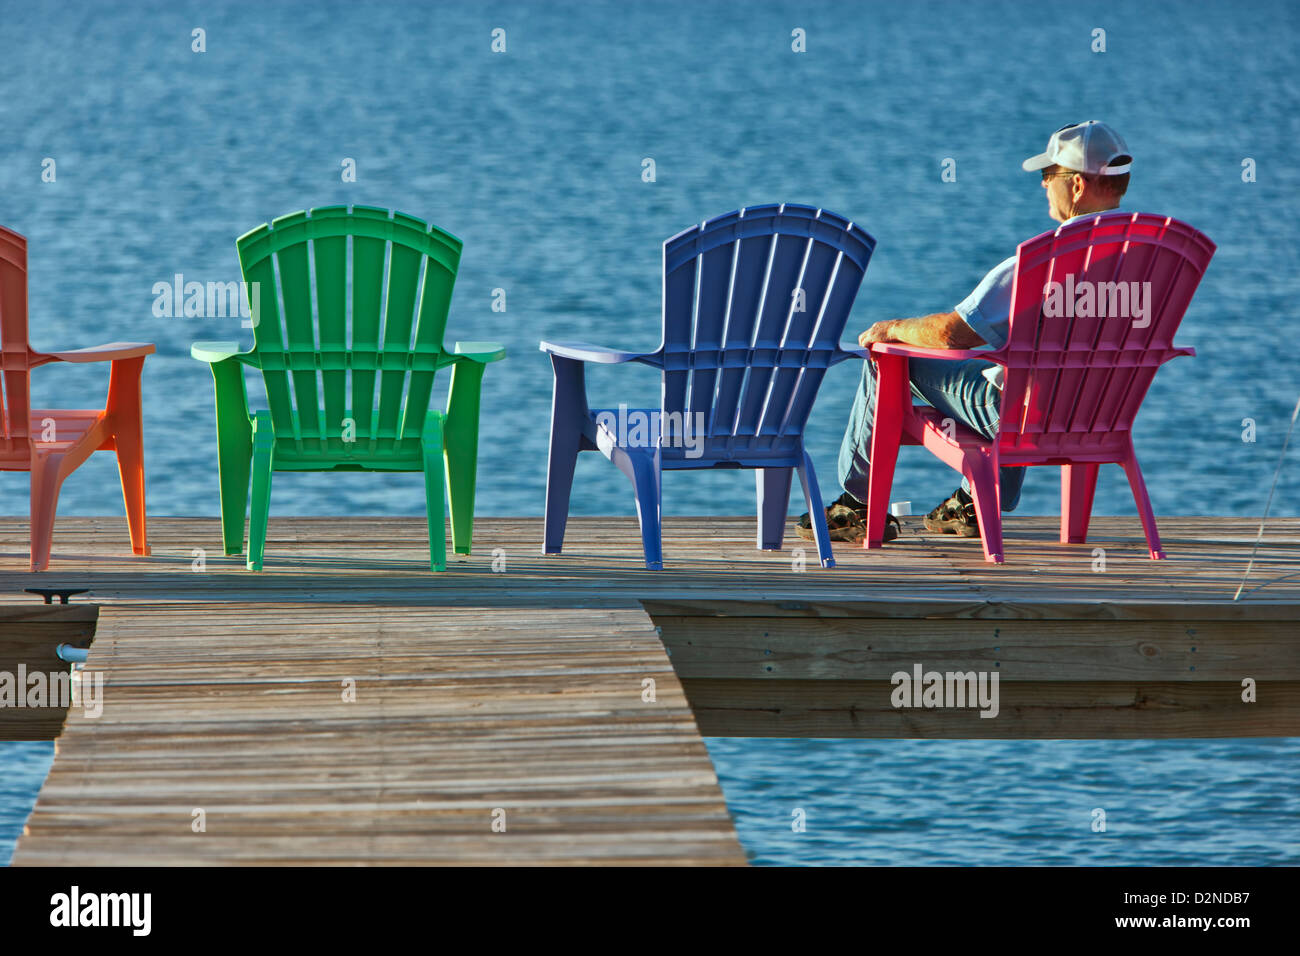 Senioren männlich rot Kunststoff Liegestuhl sitzen fishing Pier  Stockfotografie - Alamy